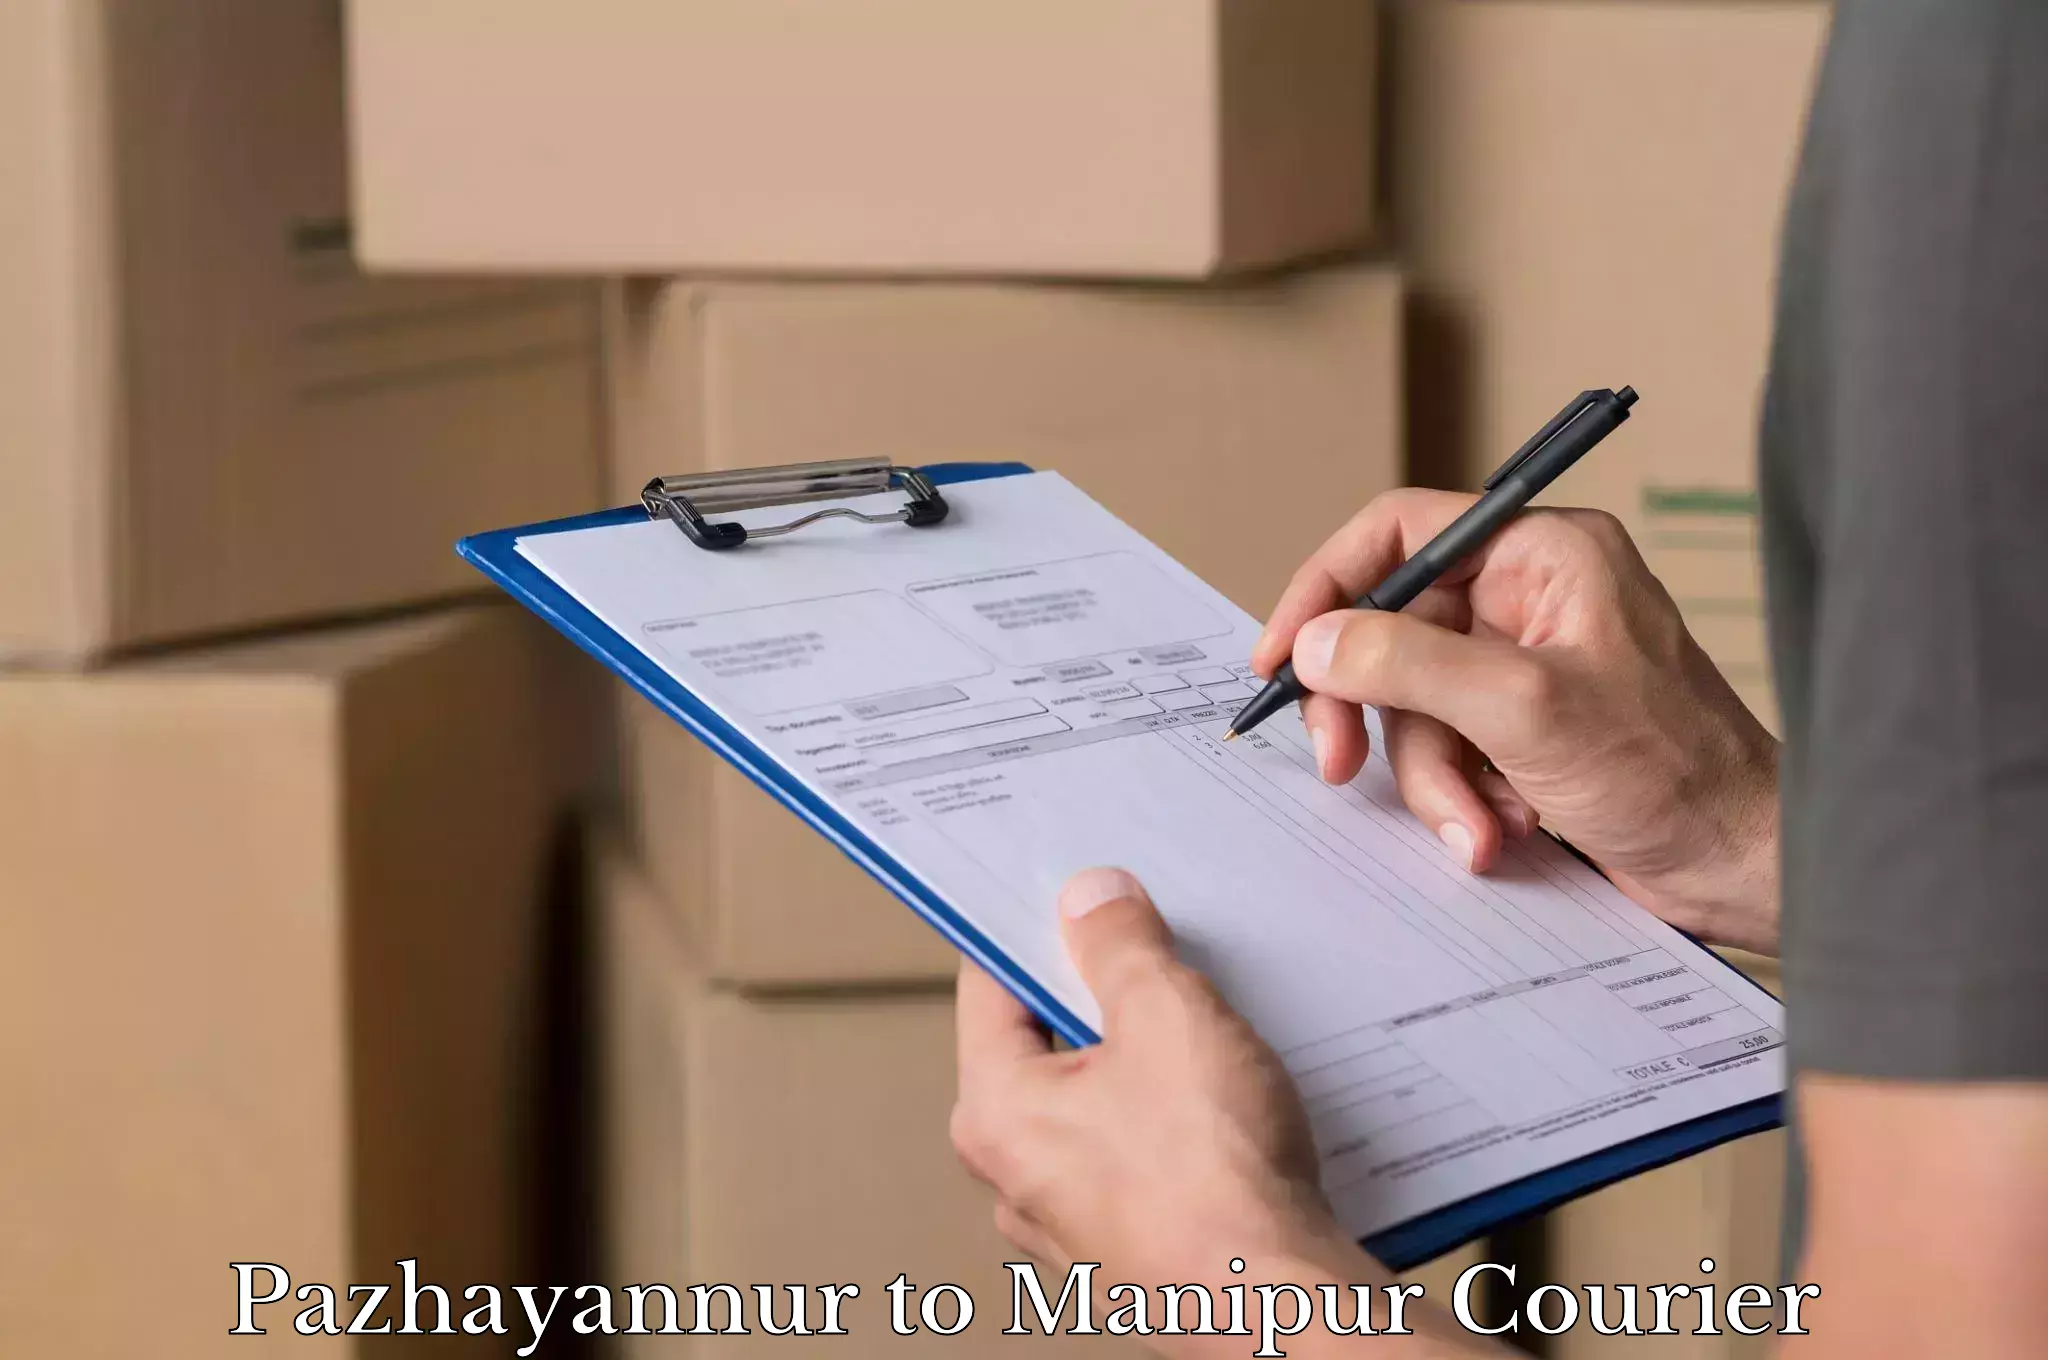 Luggage dispatch service Pazhayannur to Manipur